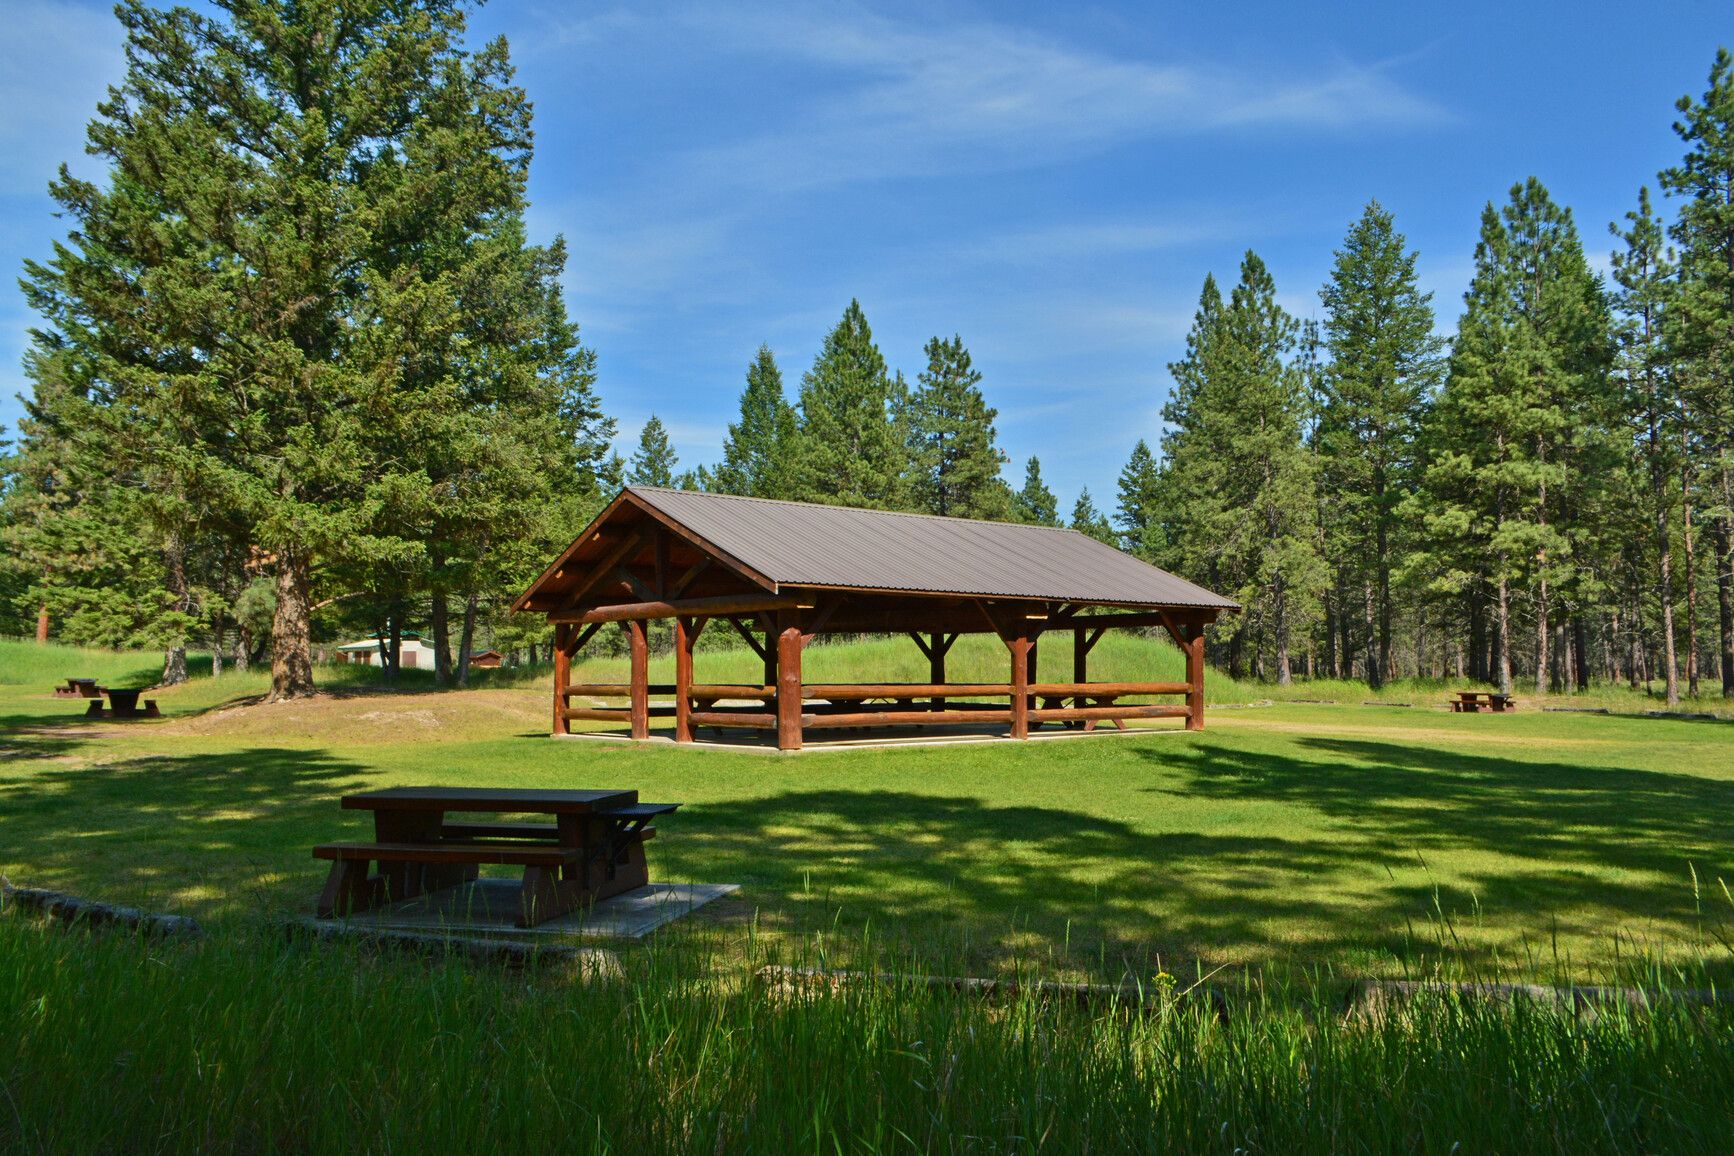 Enjoy picnics in the shade at Kikomun Creek Park's day-use picnic shelter.&nbsp;